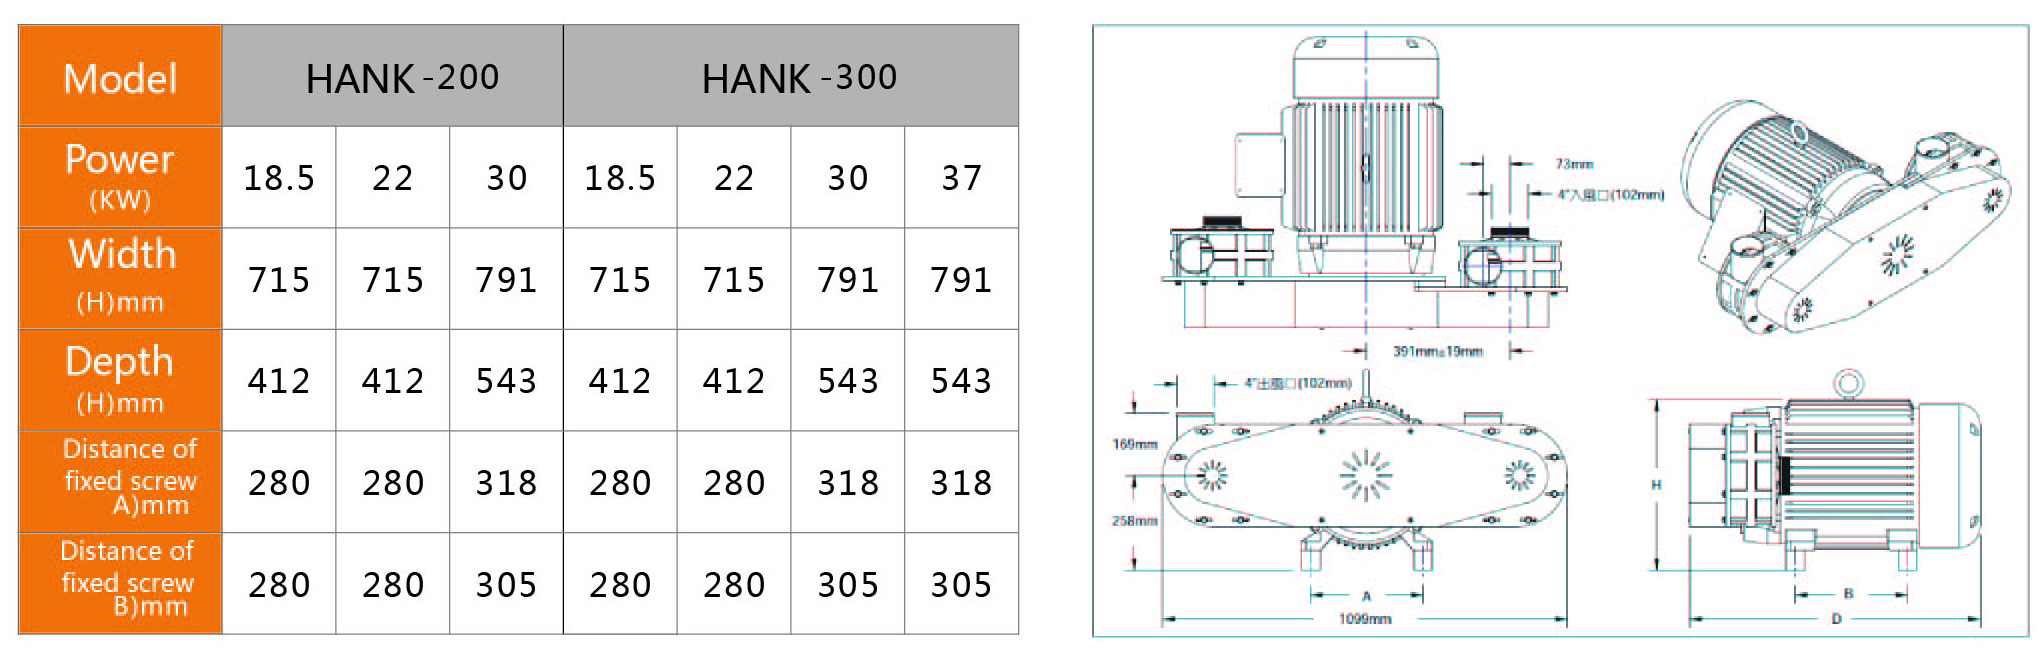 hank-200